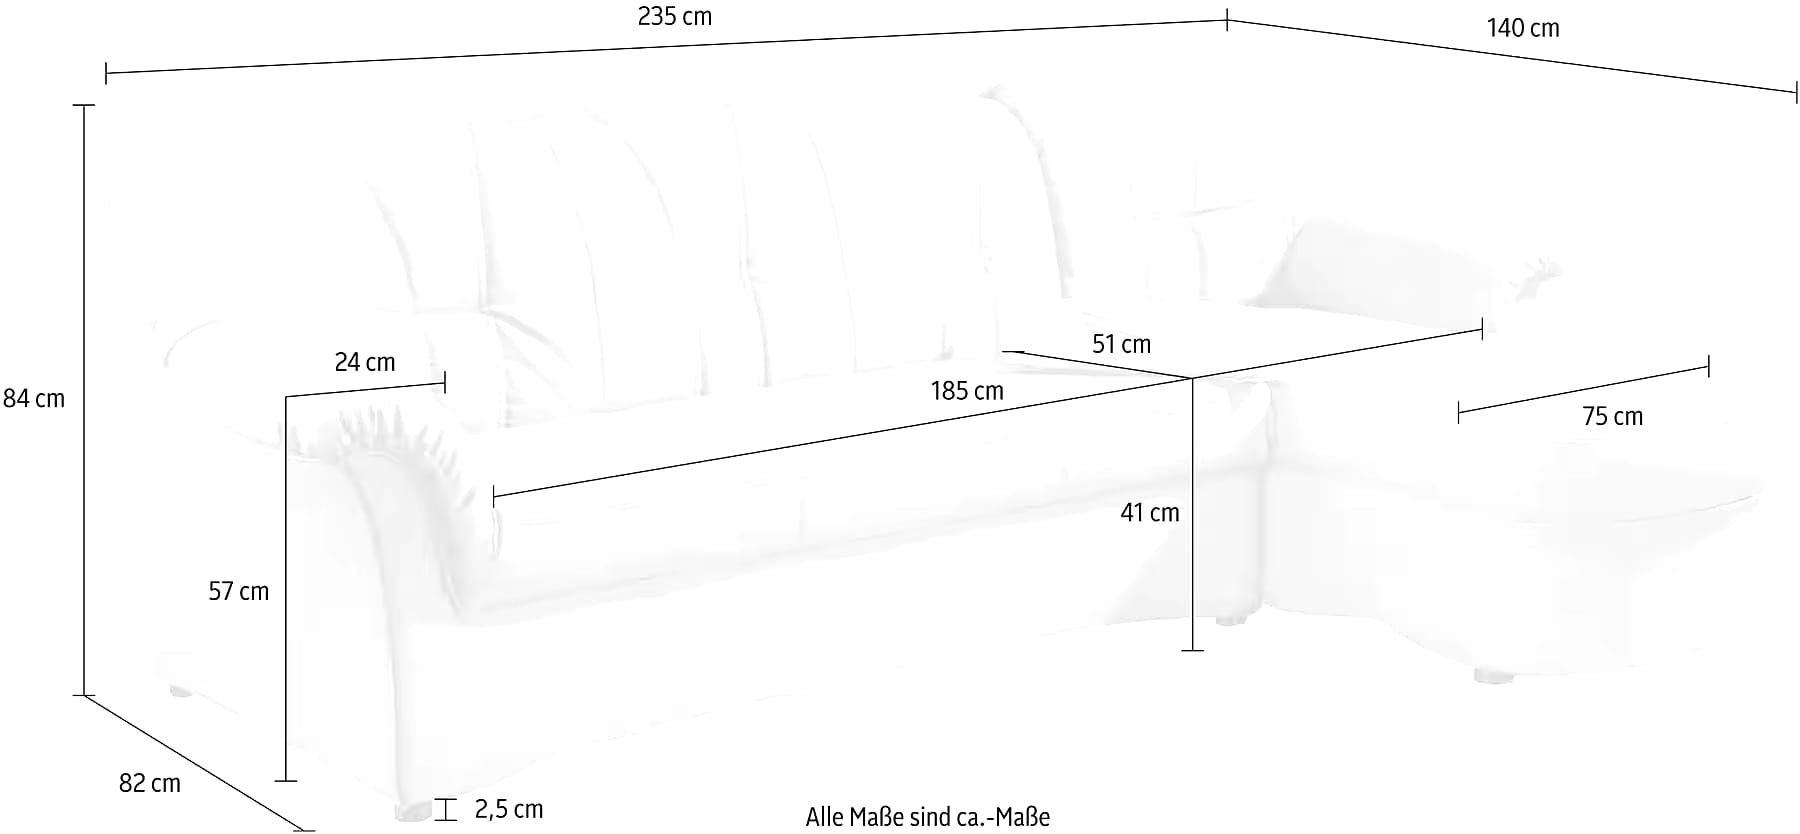 Sofa+sillon - Paprnburgo N.º de artículo 7214336567